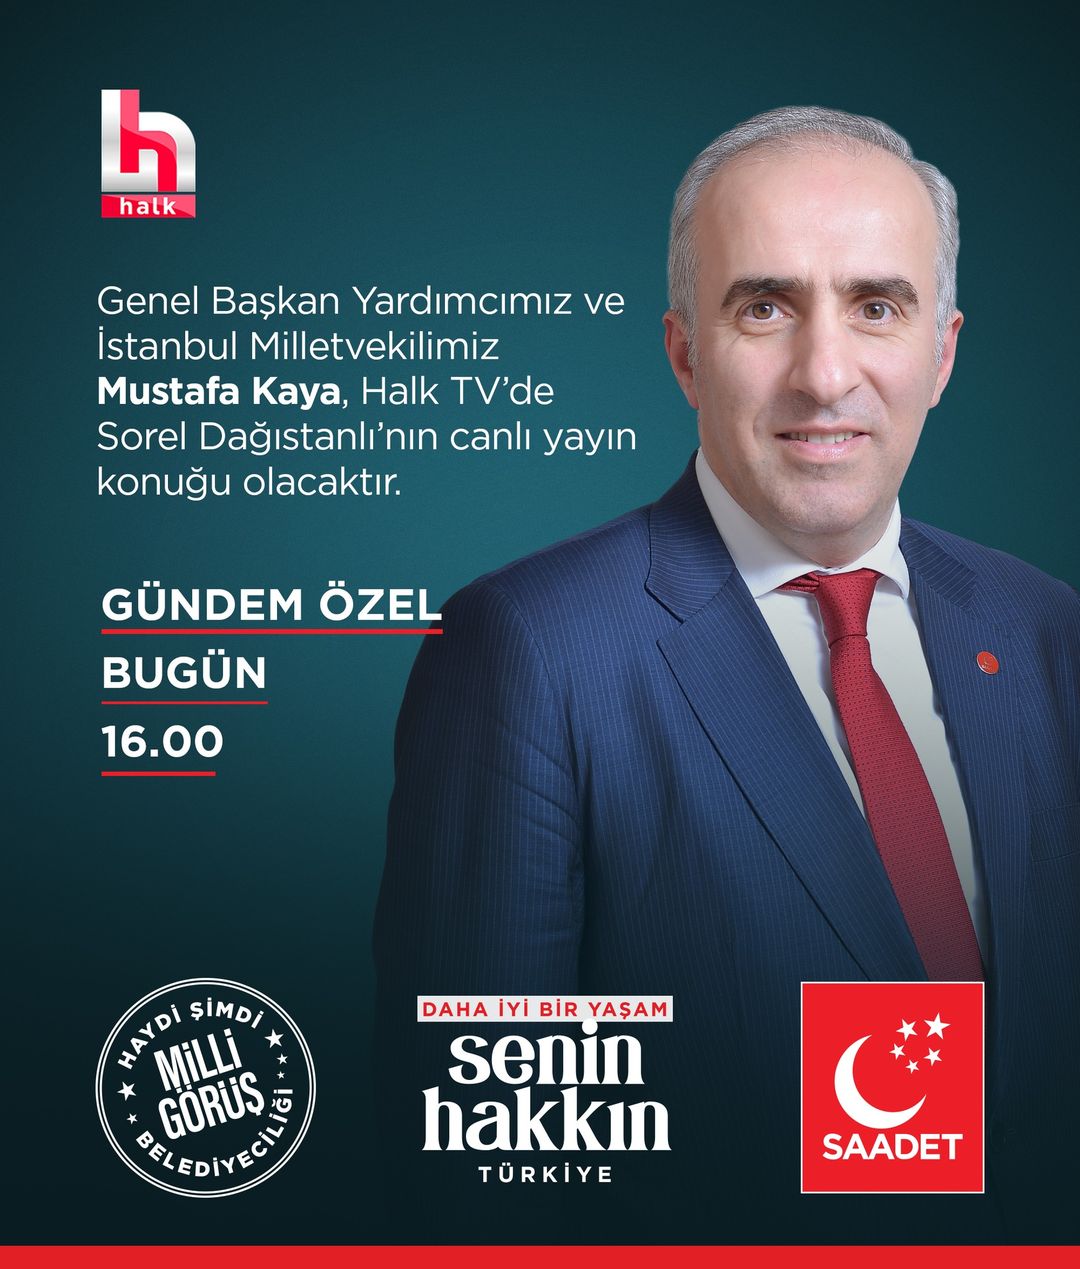 Saadet Partisi Genel Başkan Yardımcısı Mustafa Kaya, televizyon programında güncel konuları tartışacak.